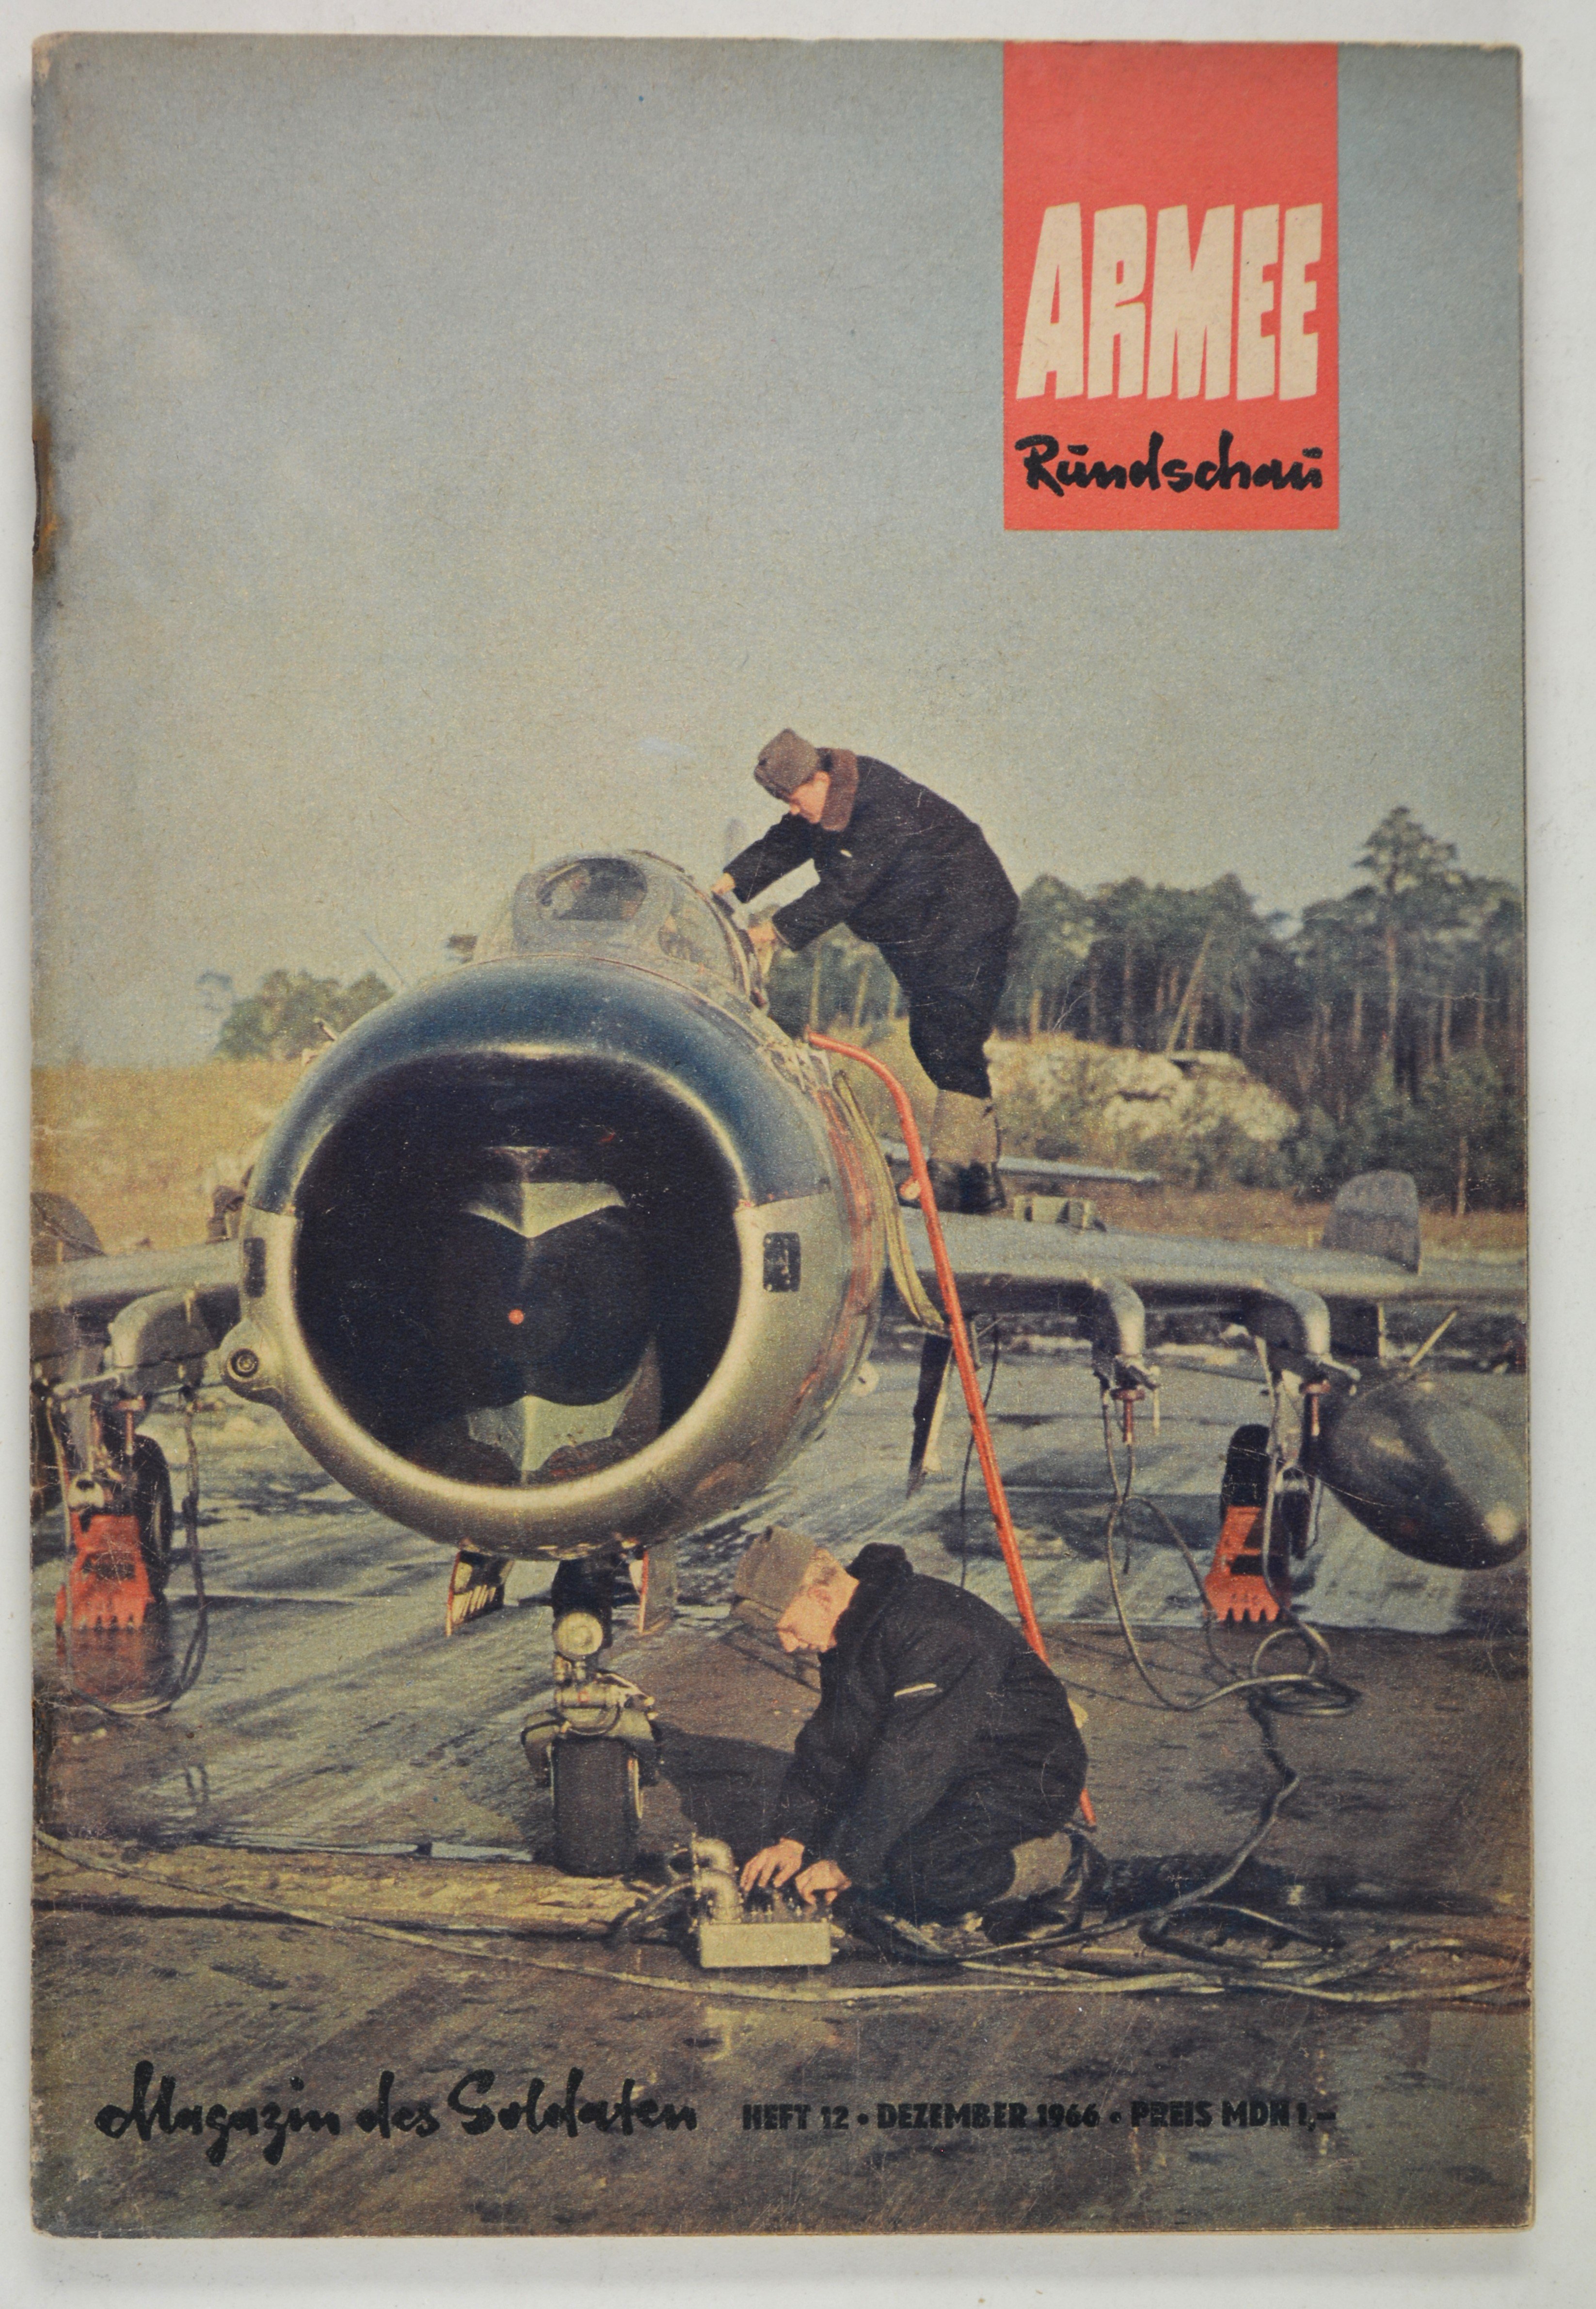 Armeerundschau - Magazin des Soldaten (1965), Heft 12 (DDR Geschichtsmuseum im Dokumentationszentrum Perleberg CC BY-SA)